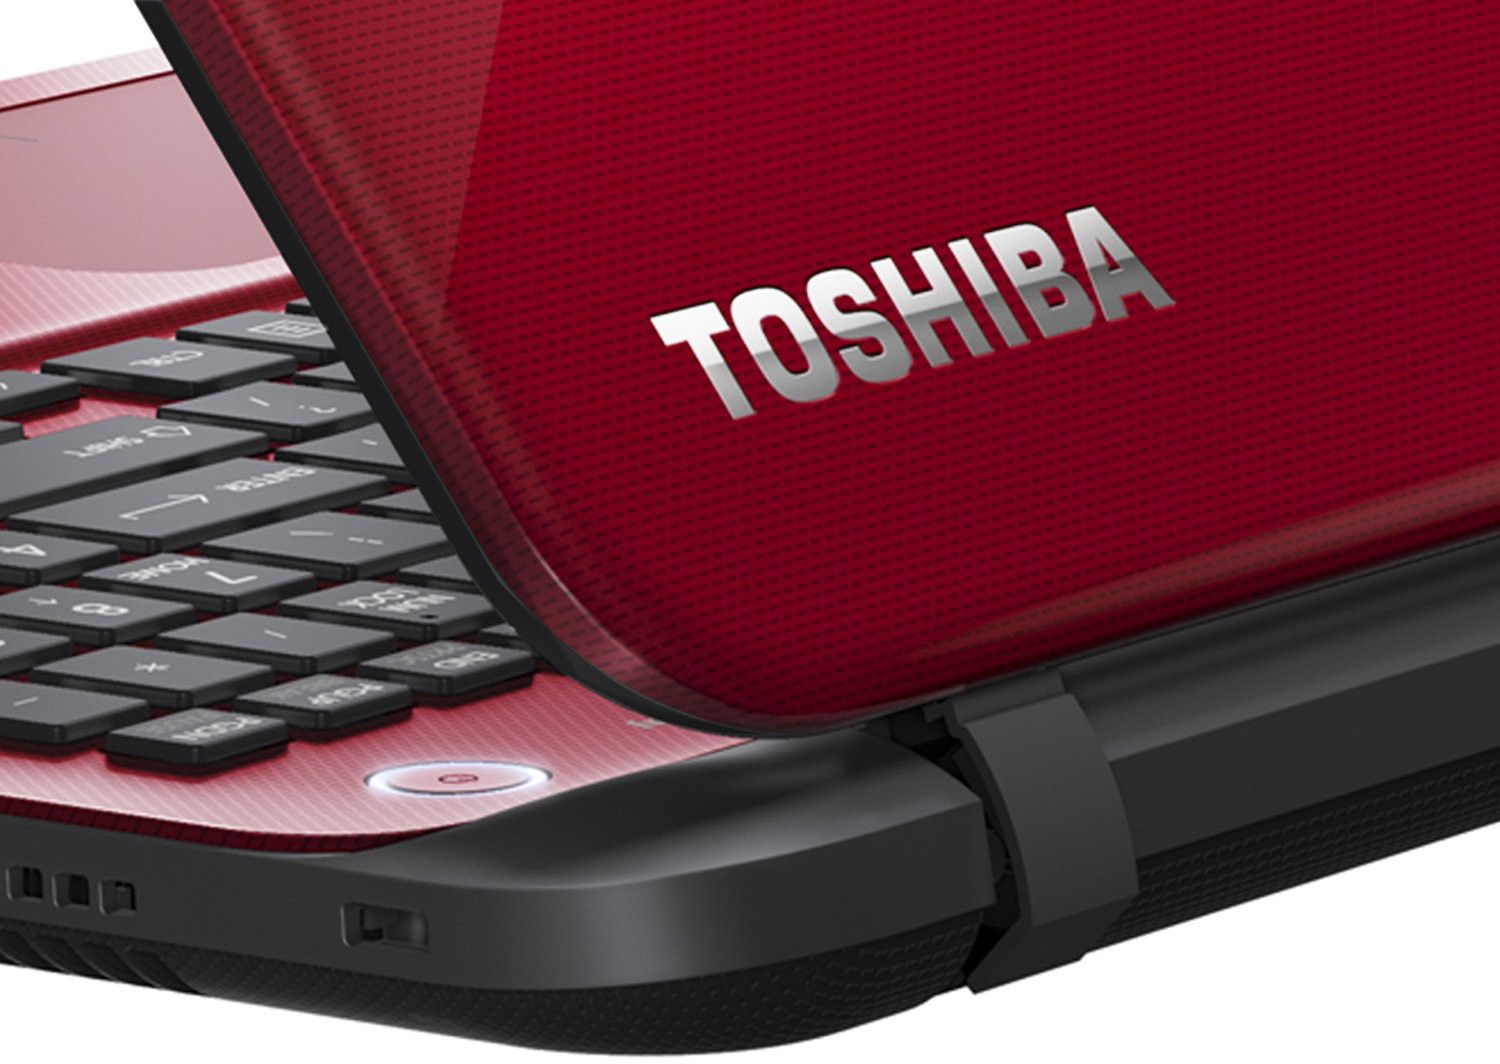 Как включить Wi-Fi на ноутбуке Toshiba и подключиться к сети?